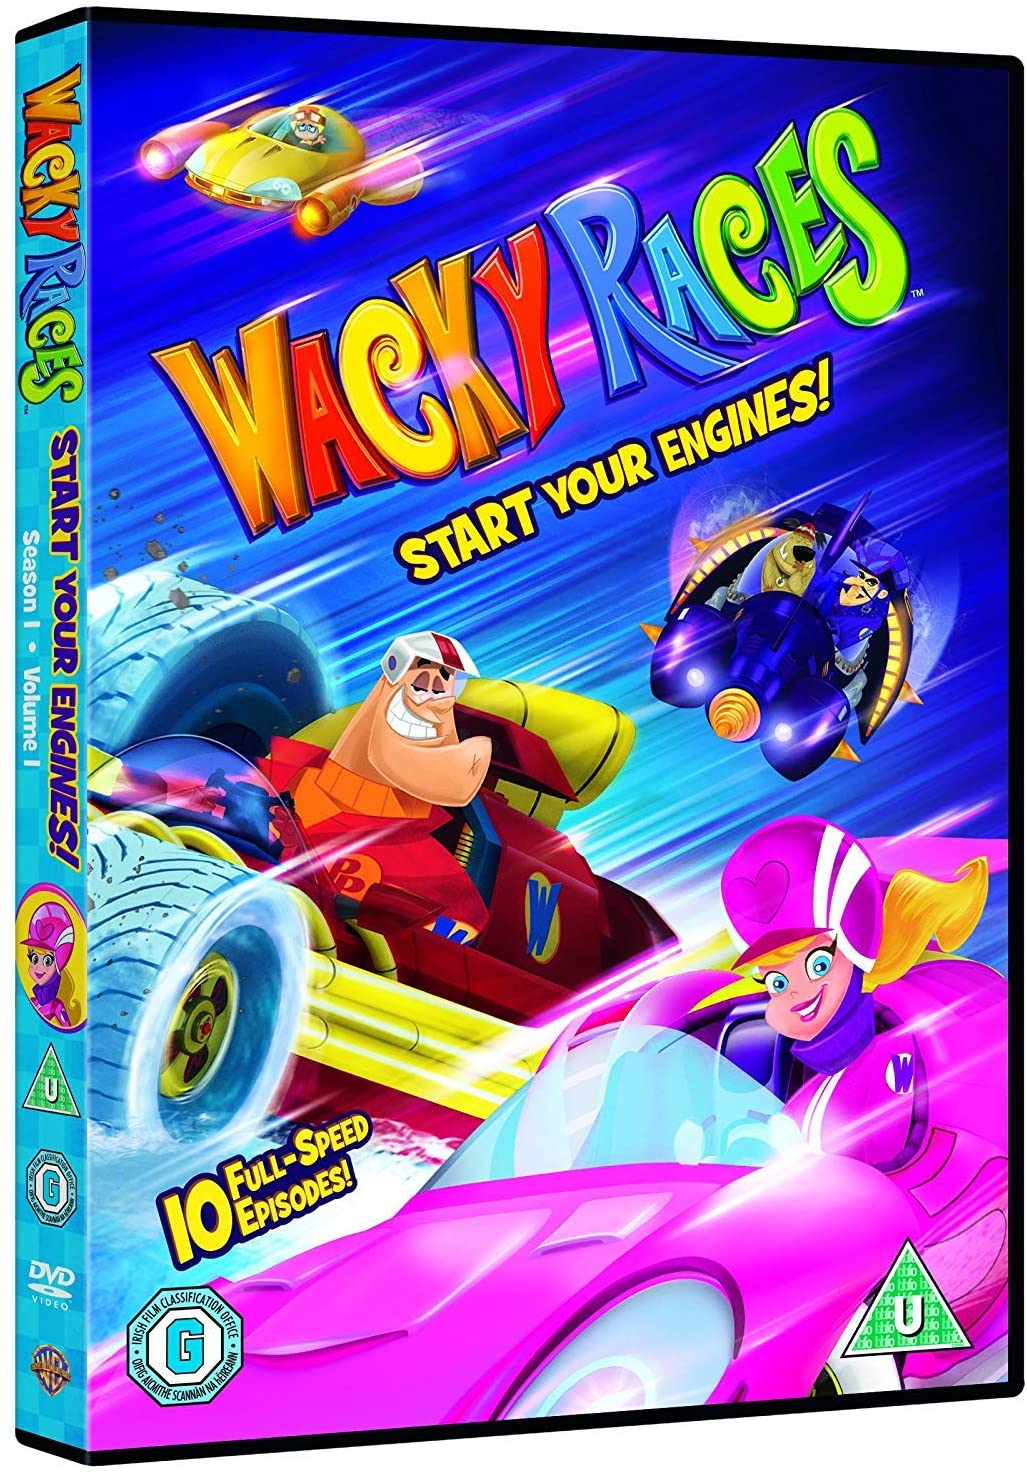 Wacky Races V1 S) [2018] - Animation [DVD]